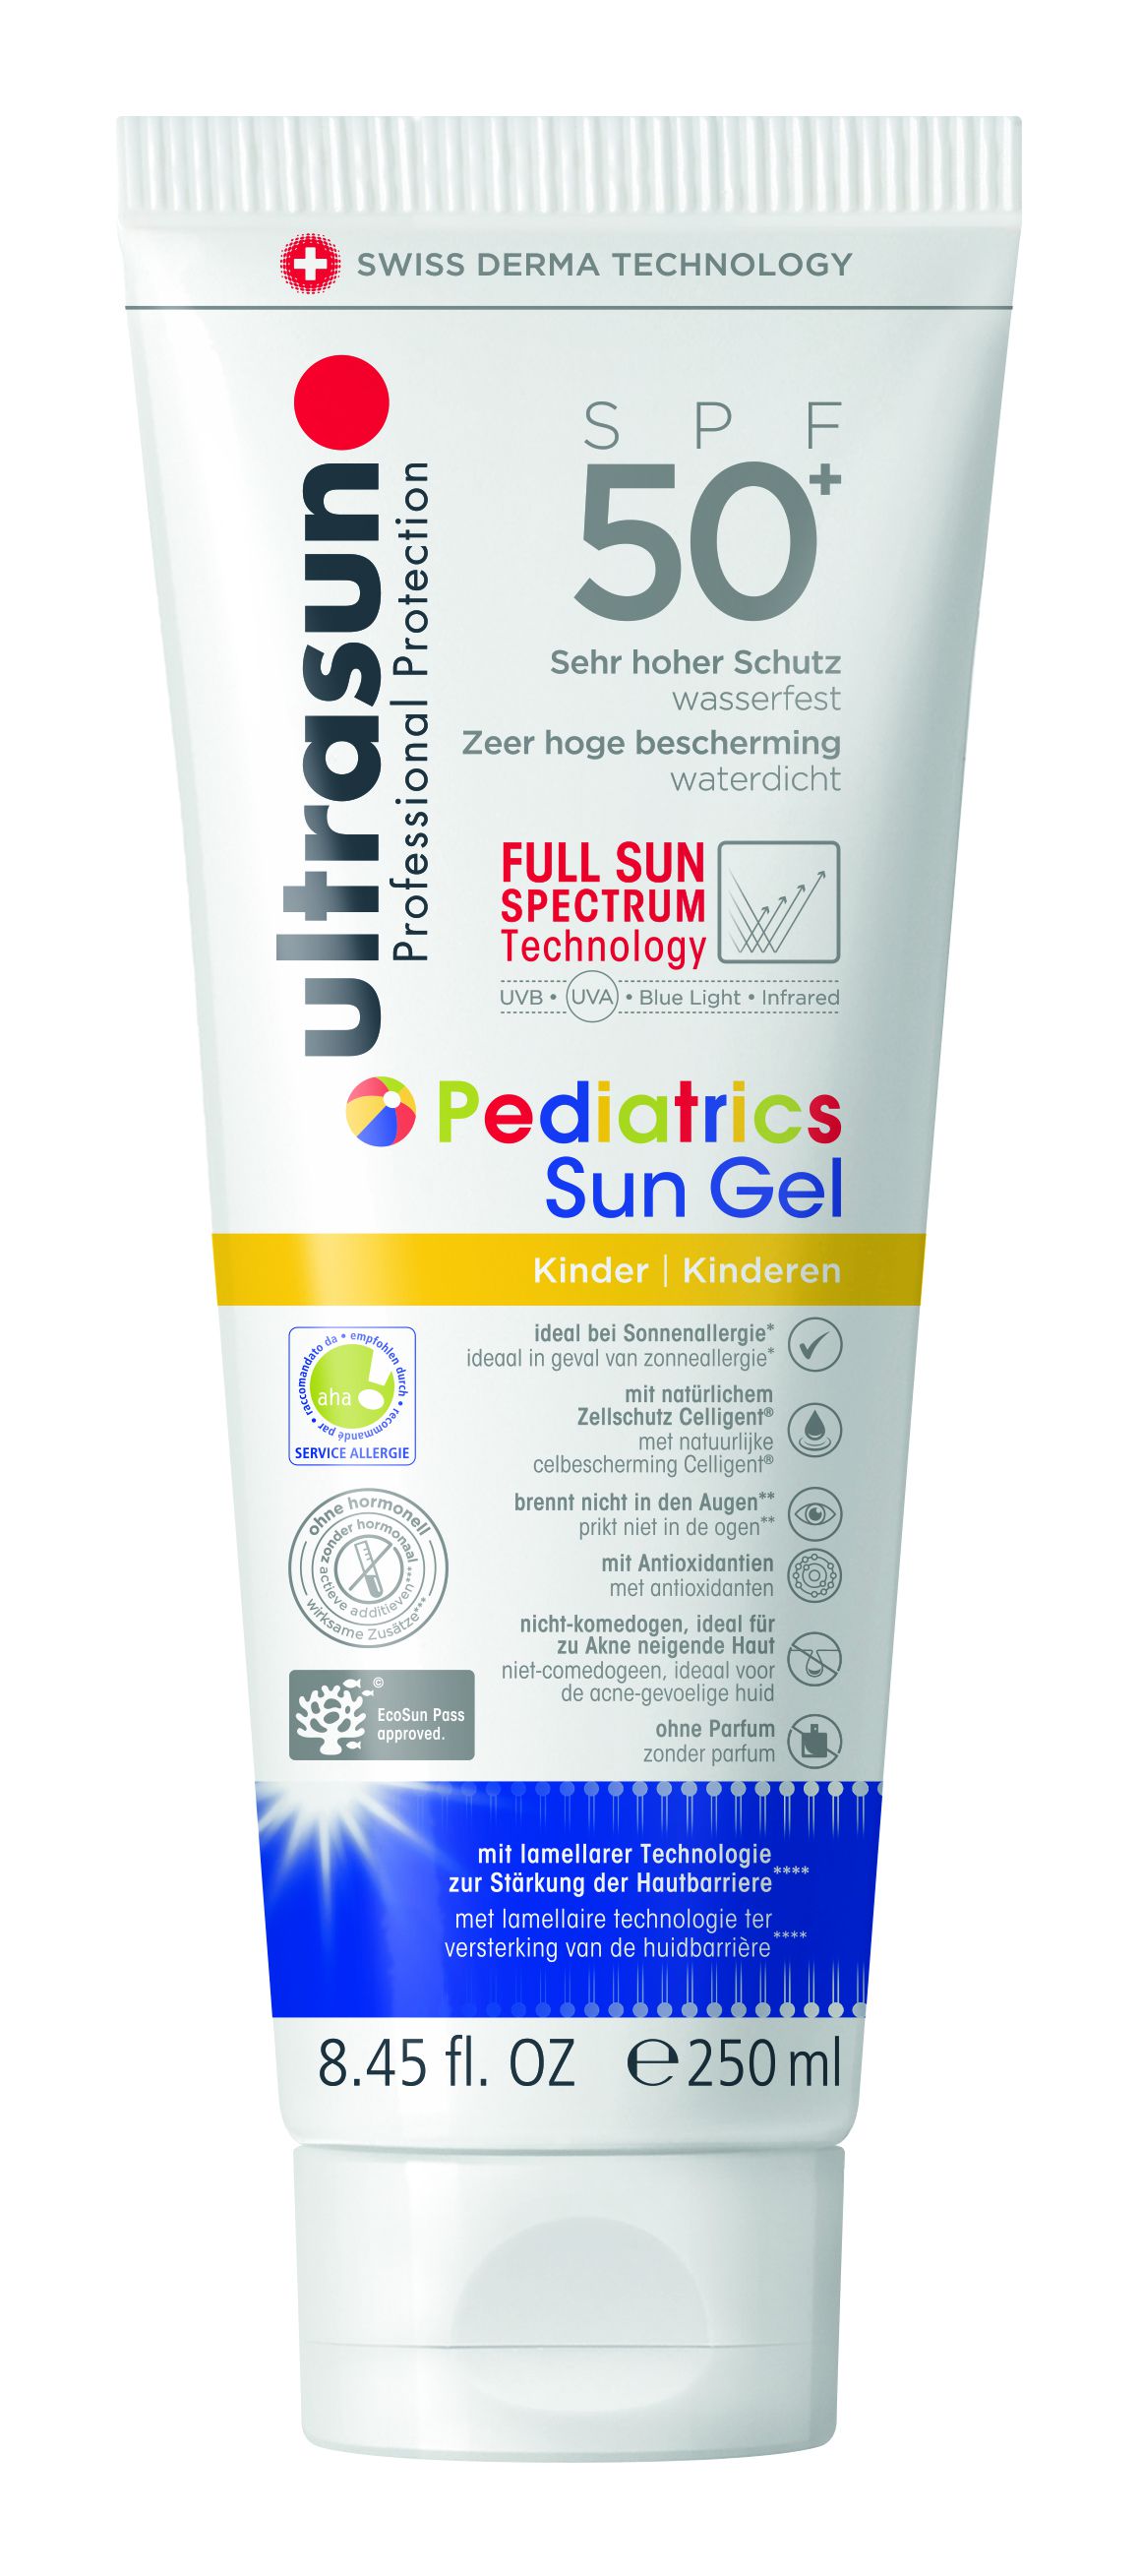 ULTRASUN Pediatrics Sun Gel SPF 50+